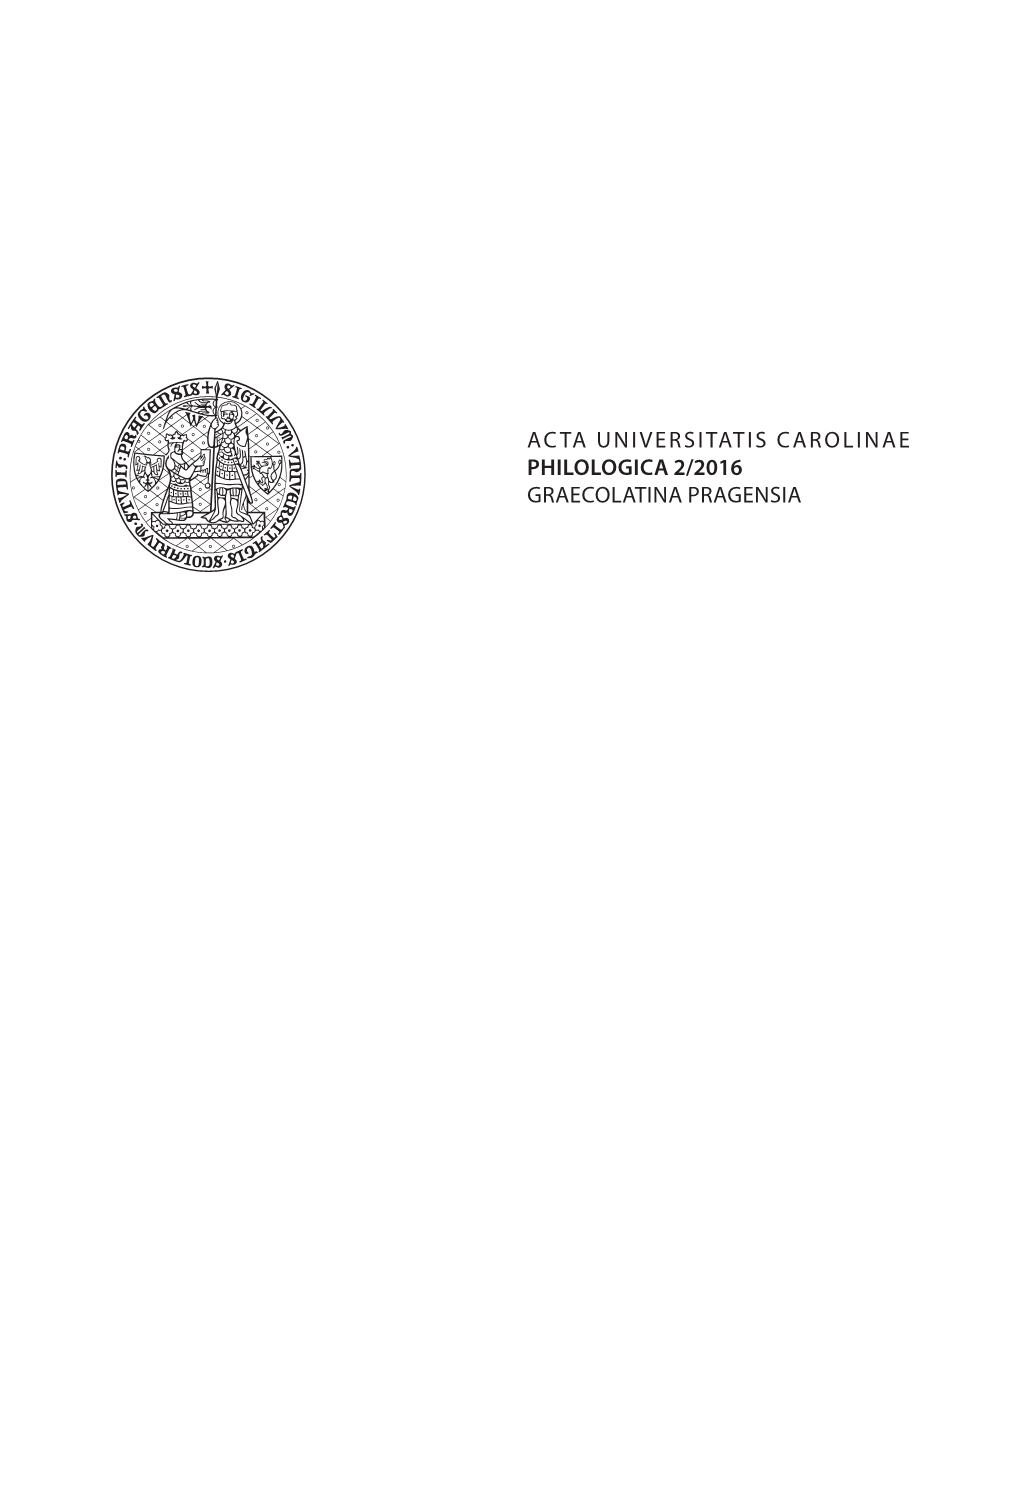 Acta Universitatis Carolinae Philologica 2/2016 Graecolatina Pragensia